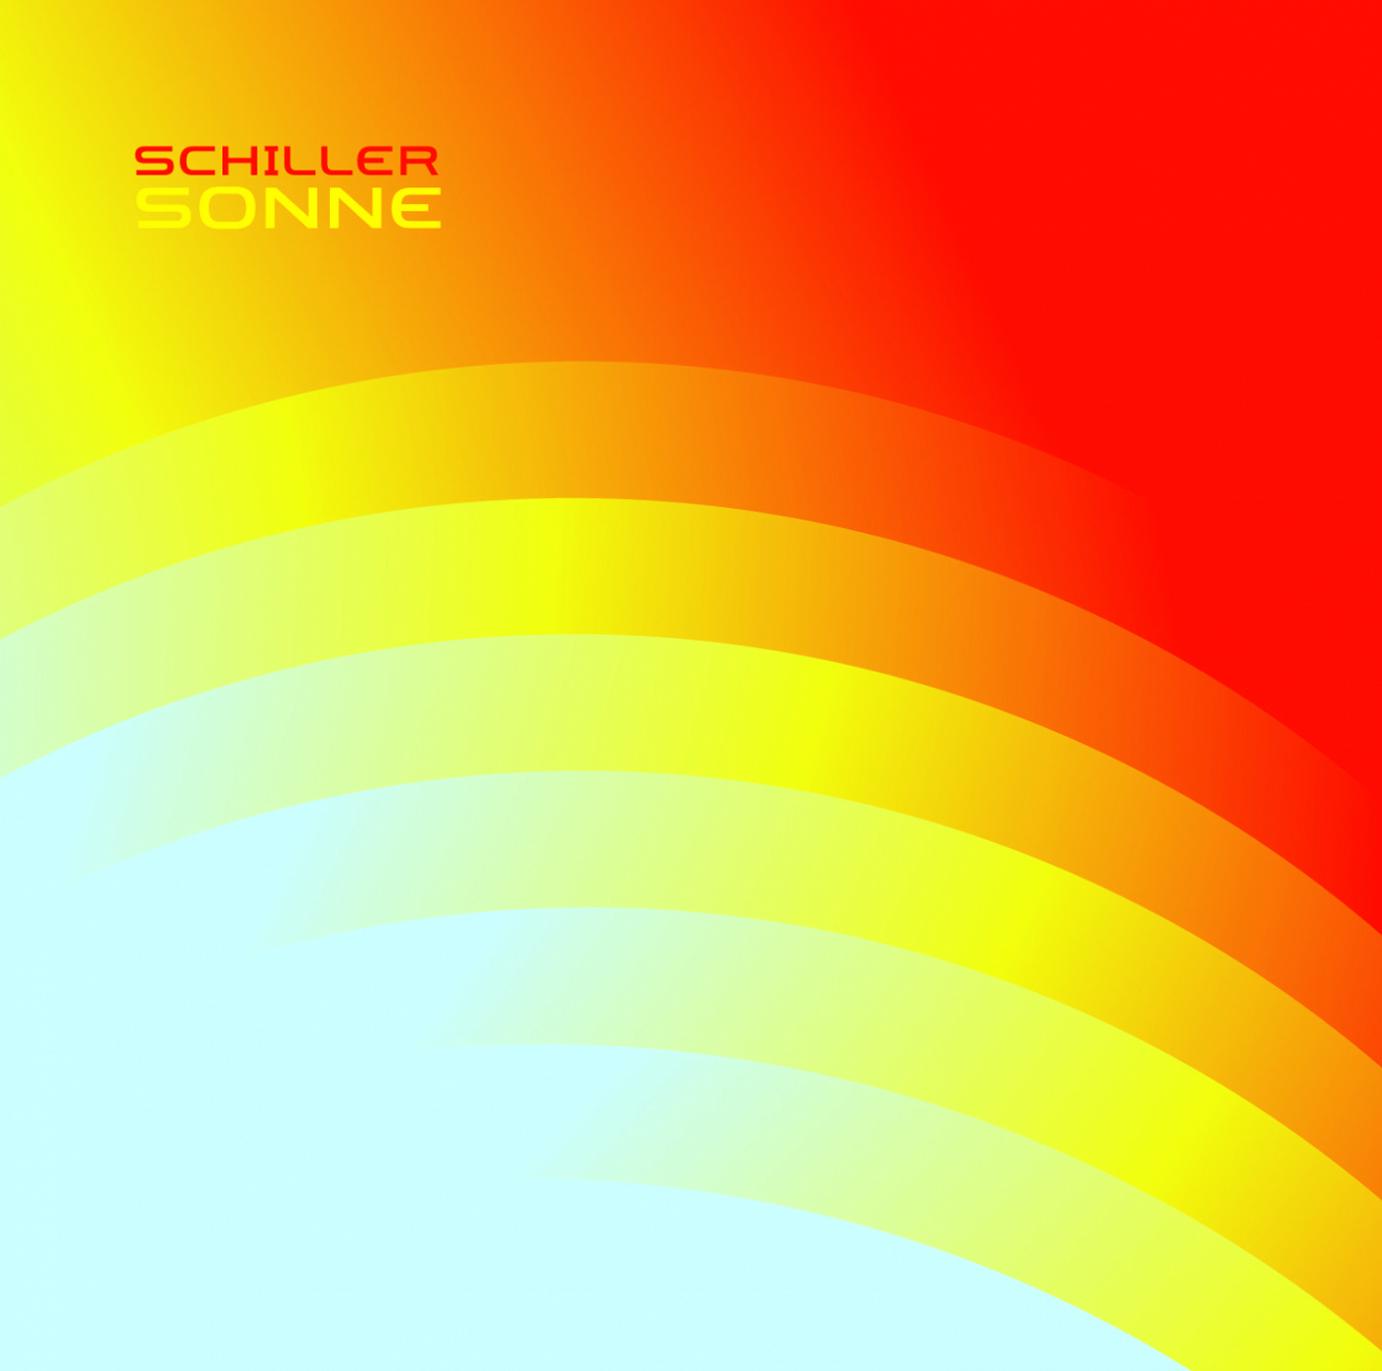 Schiller und seine sphärische Reise in Richtung Sonne